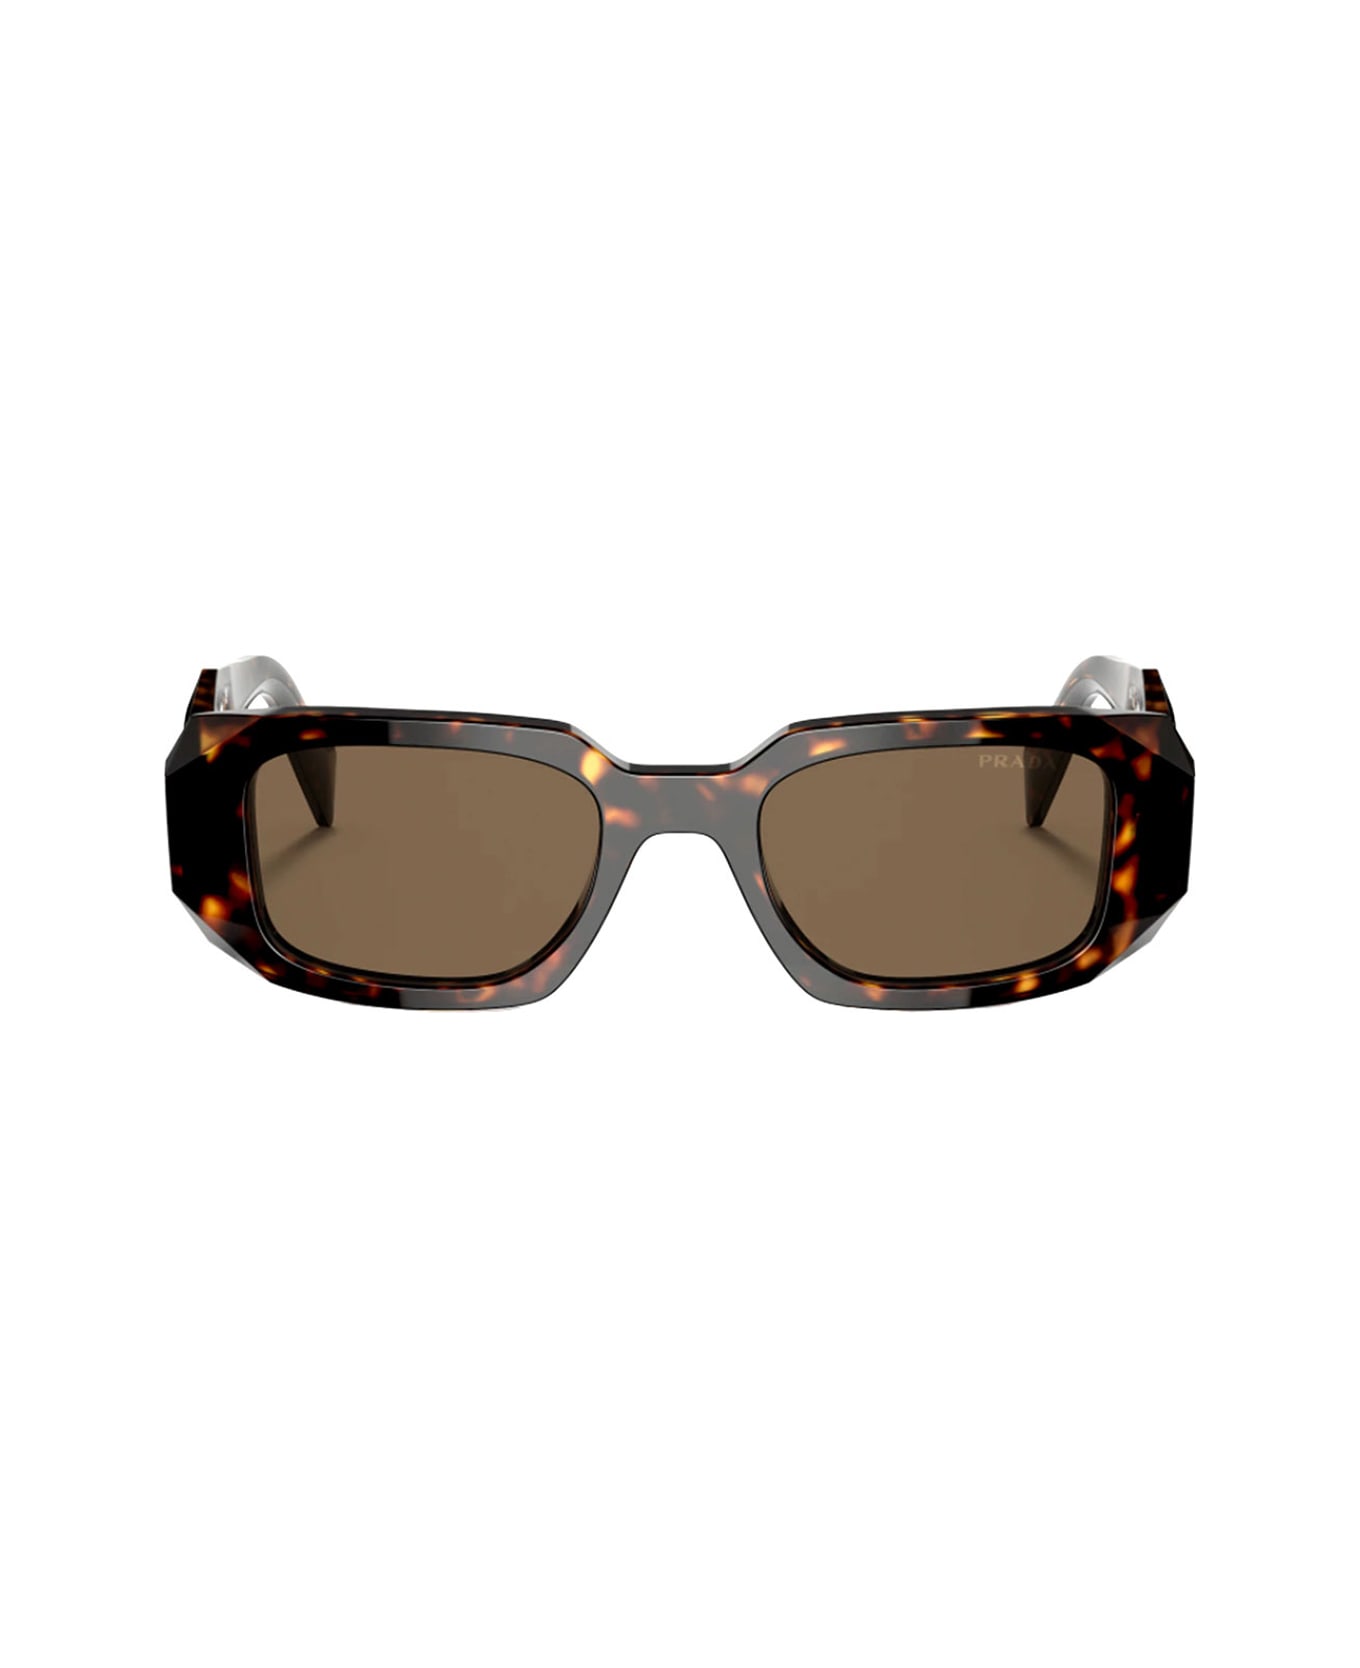 Prada Eyewear 11ab4b20a - - Prada Sunglasses - Marrone